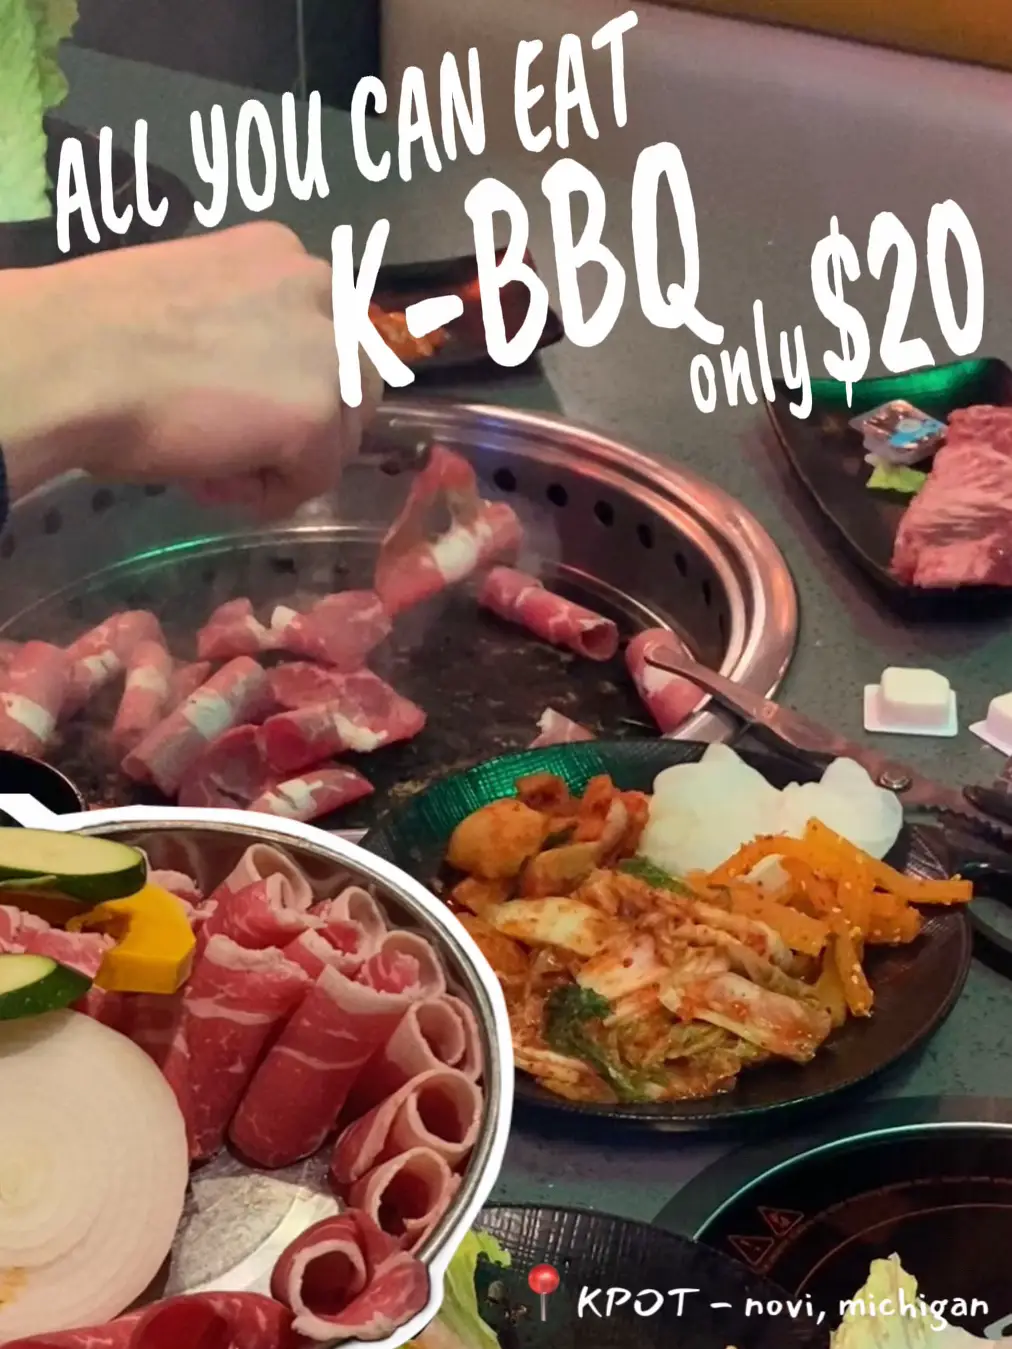 Korean BBQ restaurant promotion in SG - Lemon8 Search